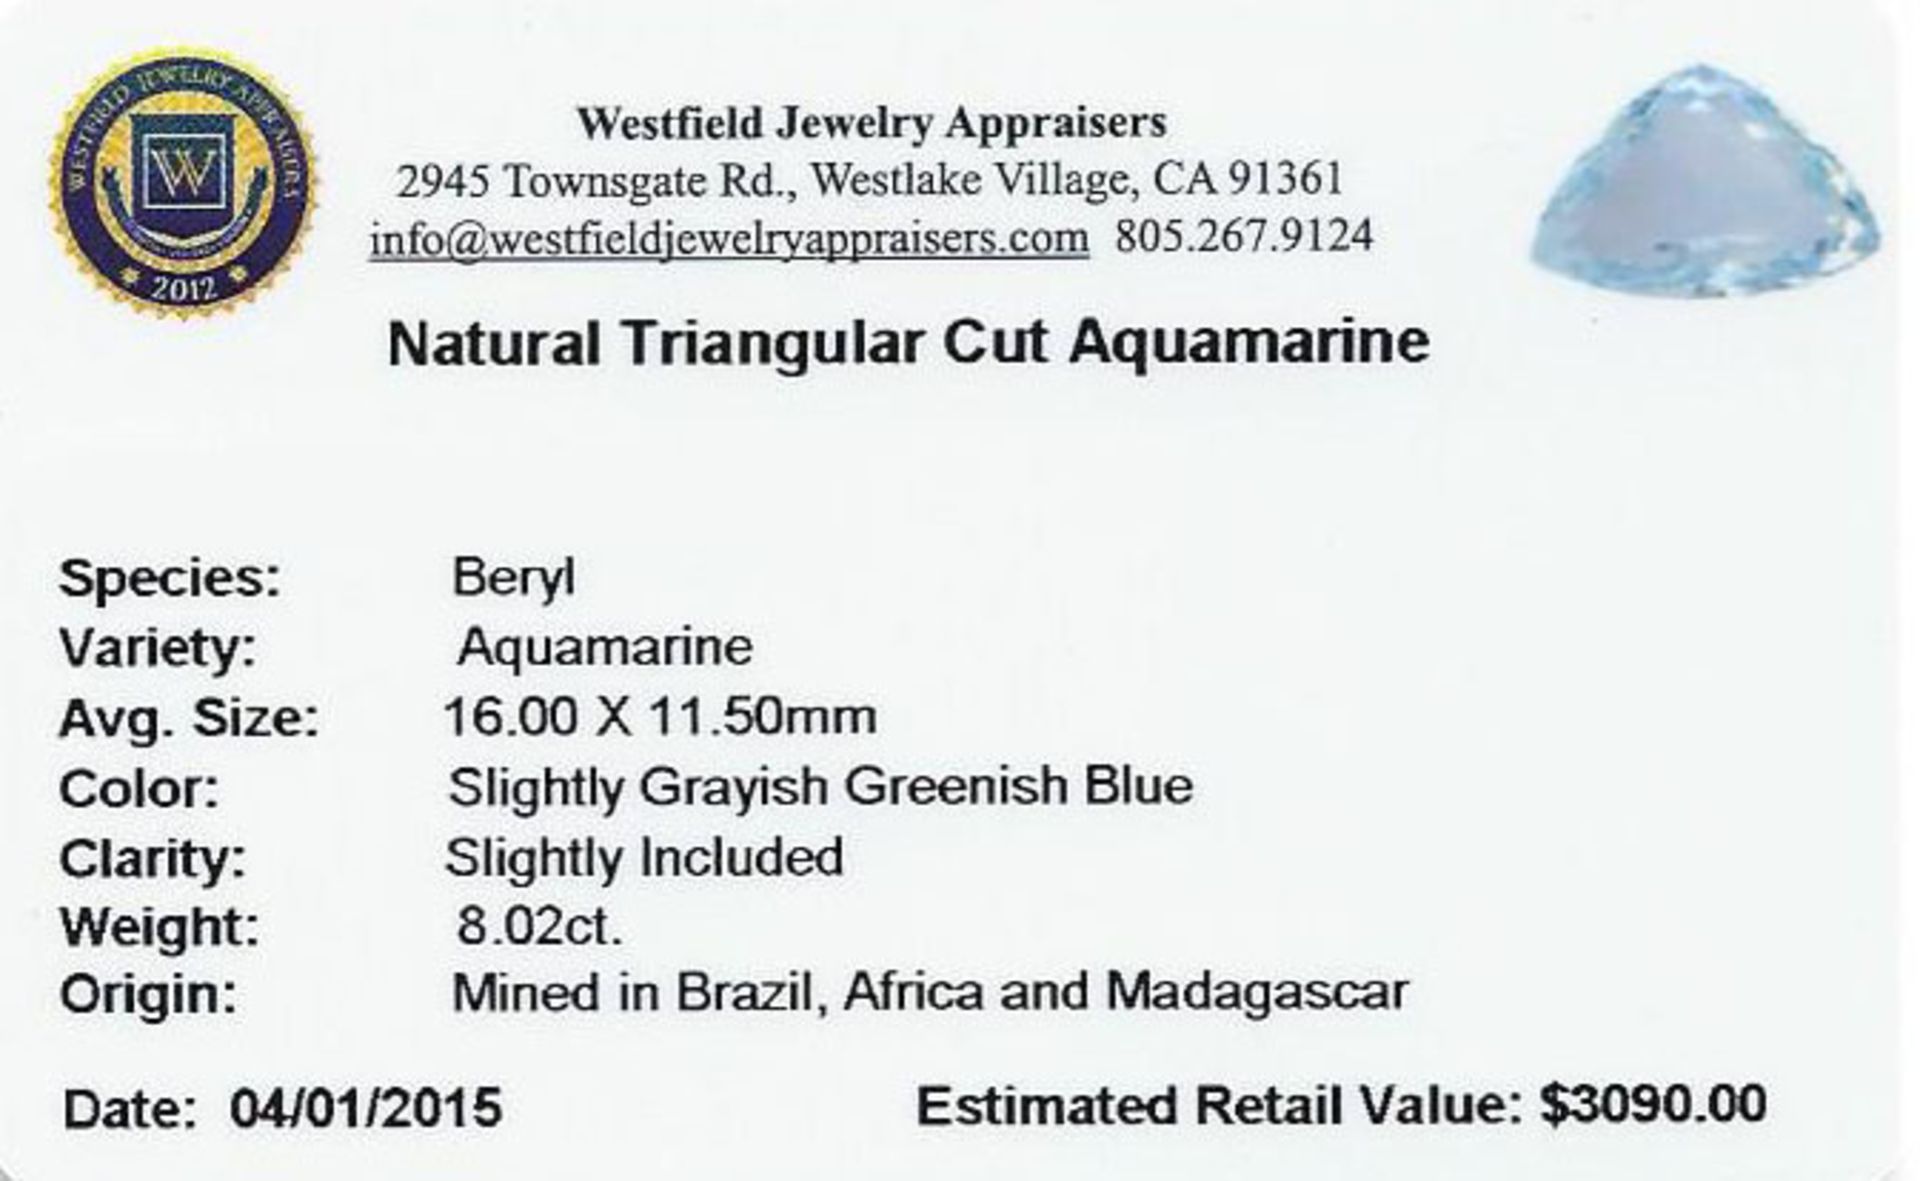 8.02 ctw Triangle Aquamarine Parcel - Image 2 of 2